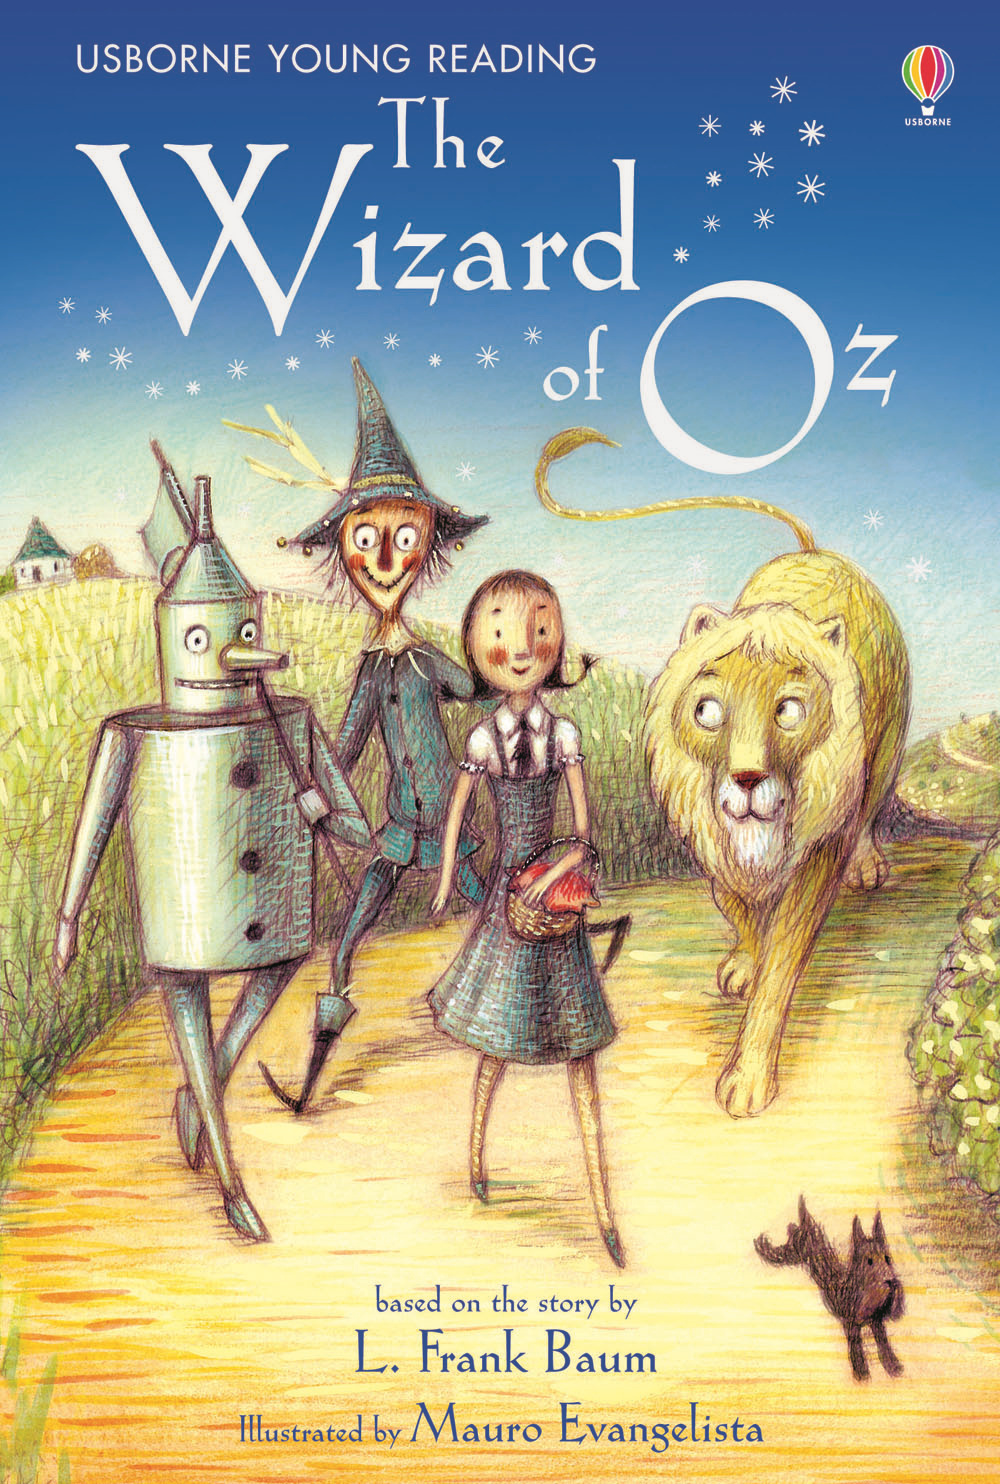 The wizard of Oz. Ediz. illustrata